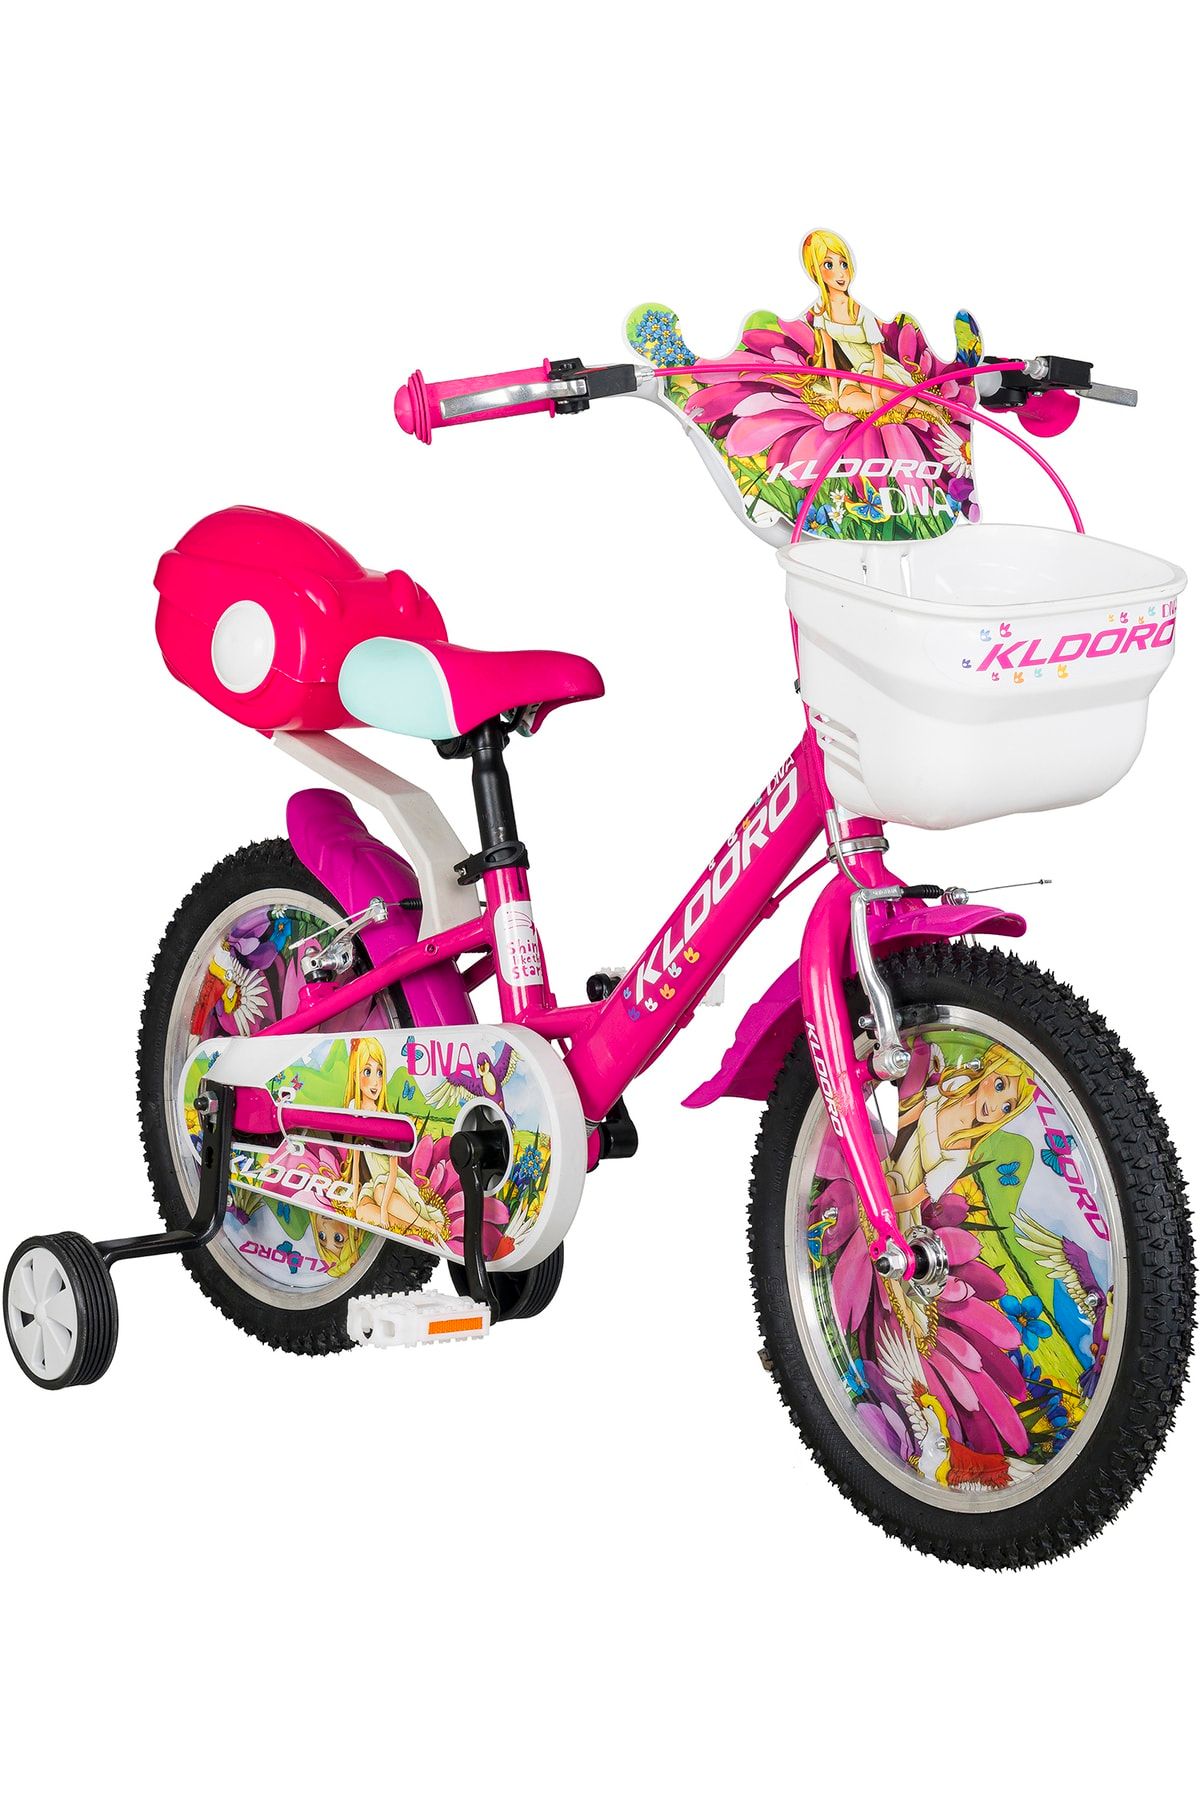 Kldoro Diva 16 Jant Bisiklet Kız Çocuk Bisikleti 000169.000049